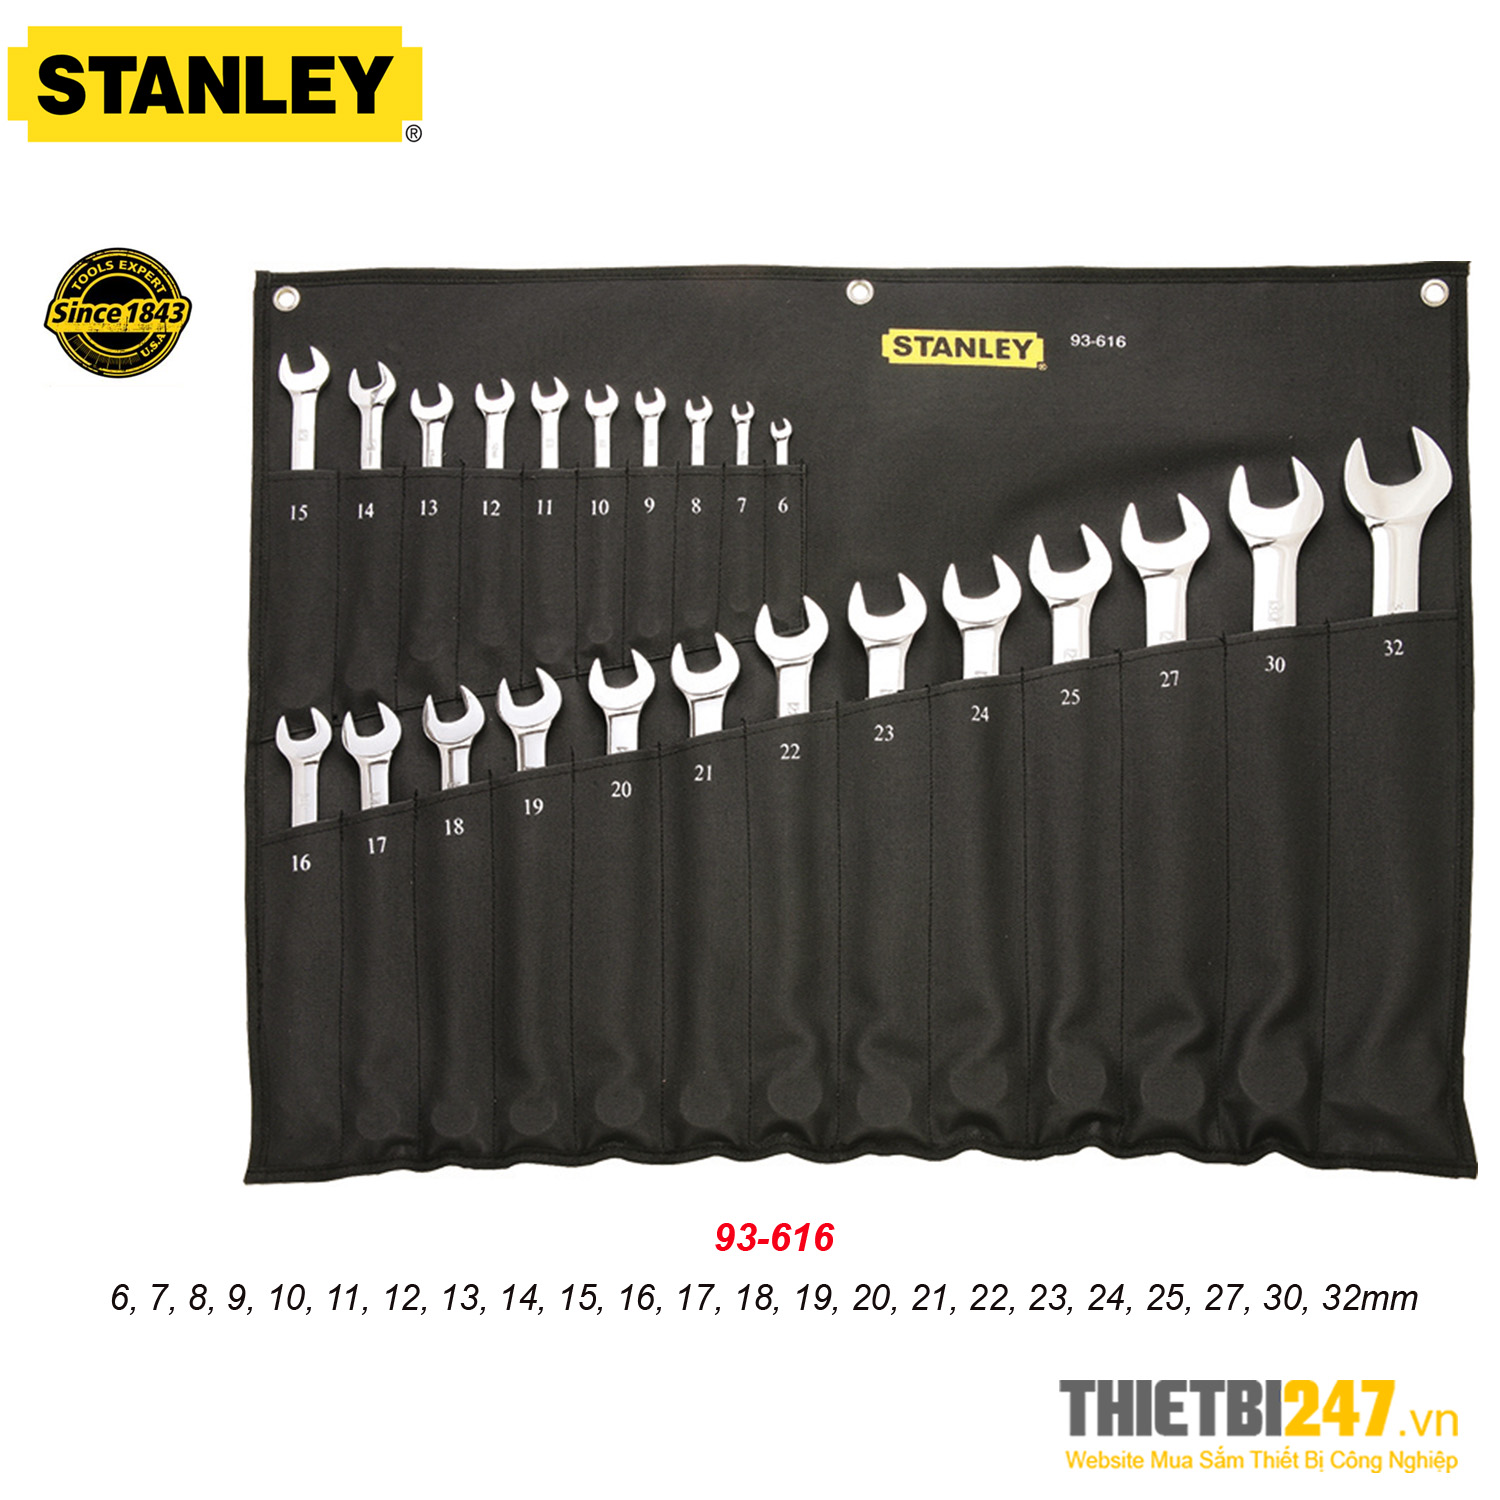 Bộ cờ lê vòng miệng Stanley 93-616 6~32mm 23 cái